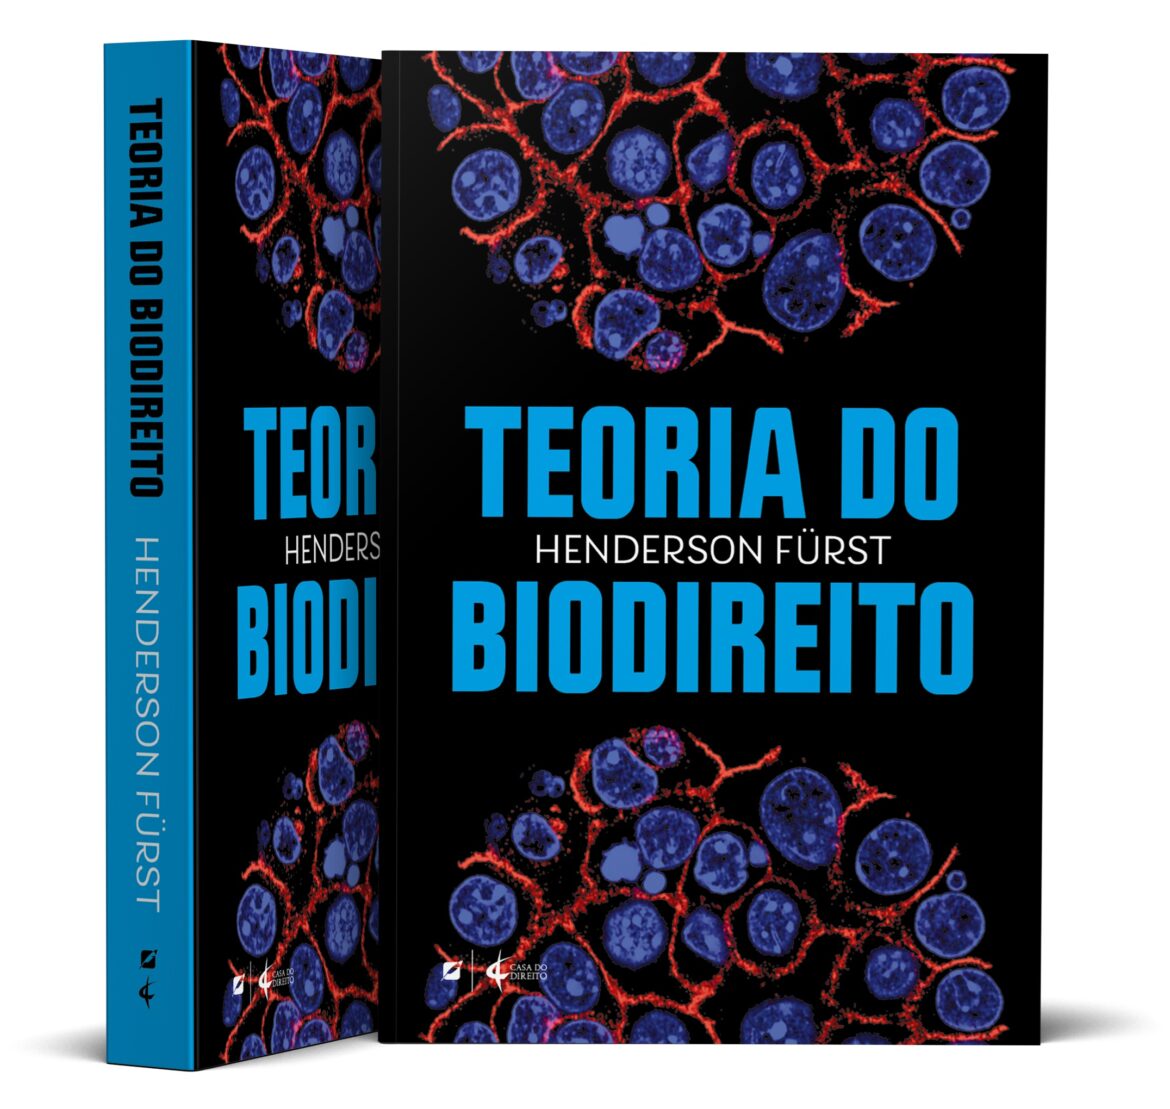 Especialista lança livro dedicado ao Biodireito